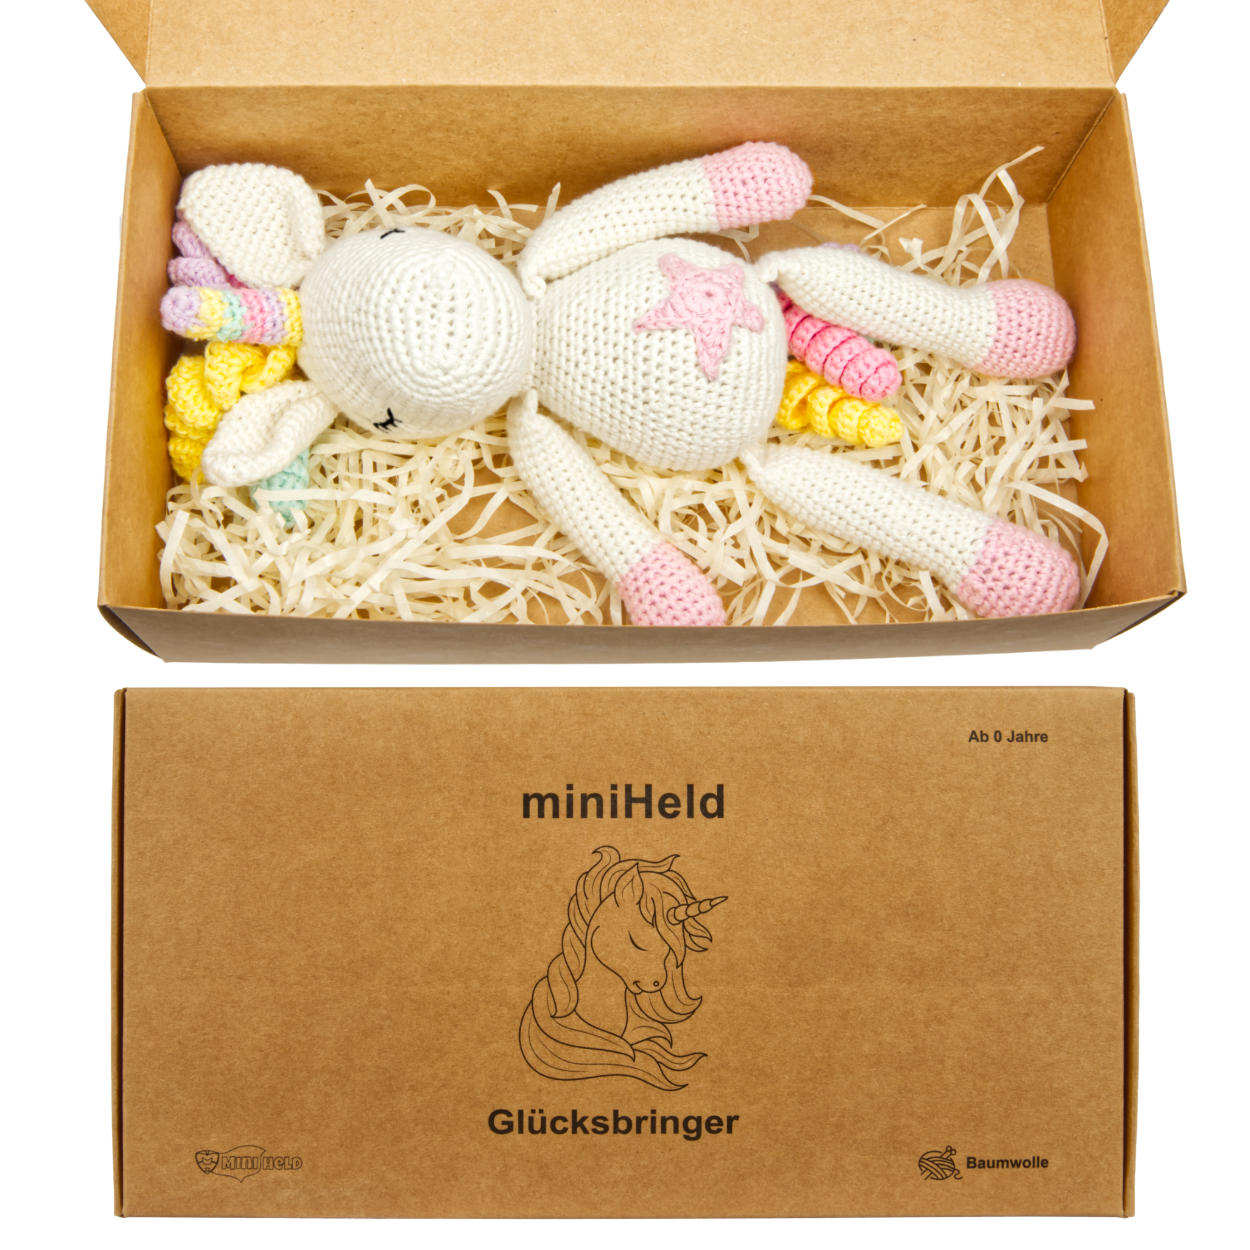 Handgestrickter Einhorn "Glücksbringer" Spielzeug gehäkelt in Handarbeit Spielzeug aus Baumwolle 28cm